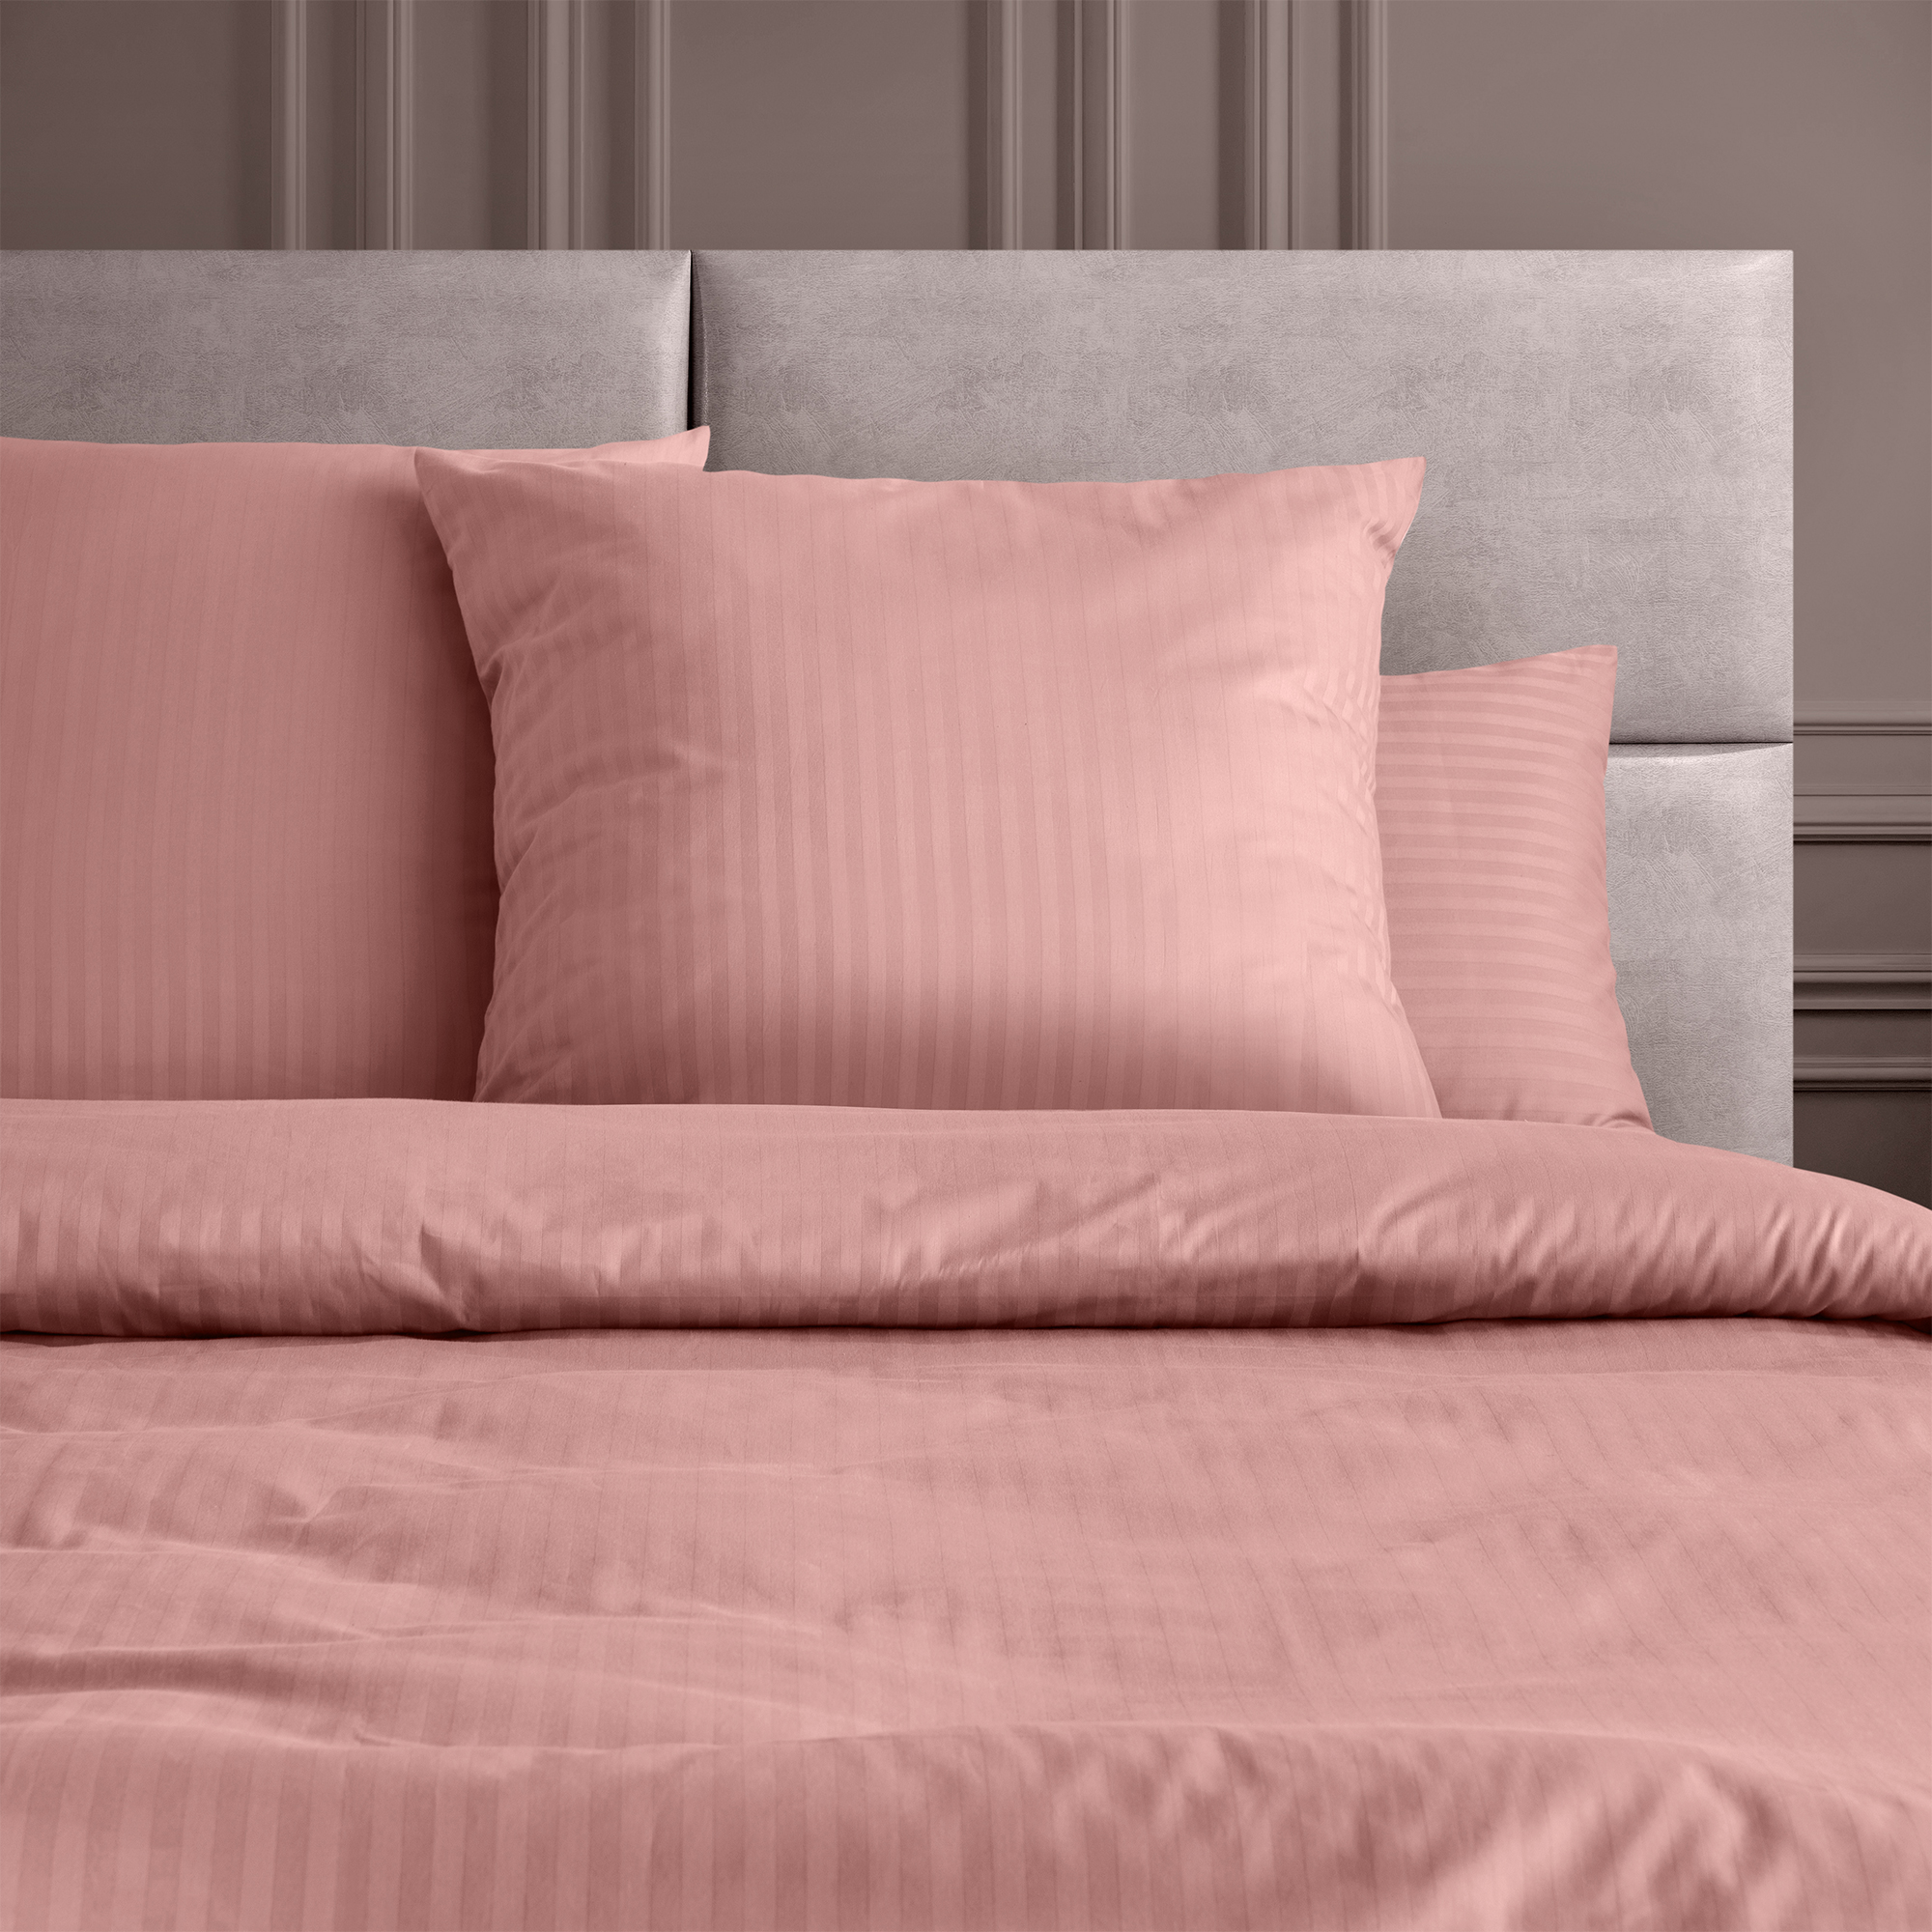 Комплект постельного белья Verossa 1.5СП Rouge страйп-сатин наволочки 70х70см 100% хлопок - фото 3